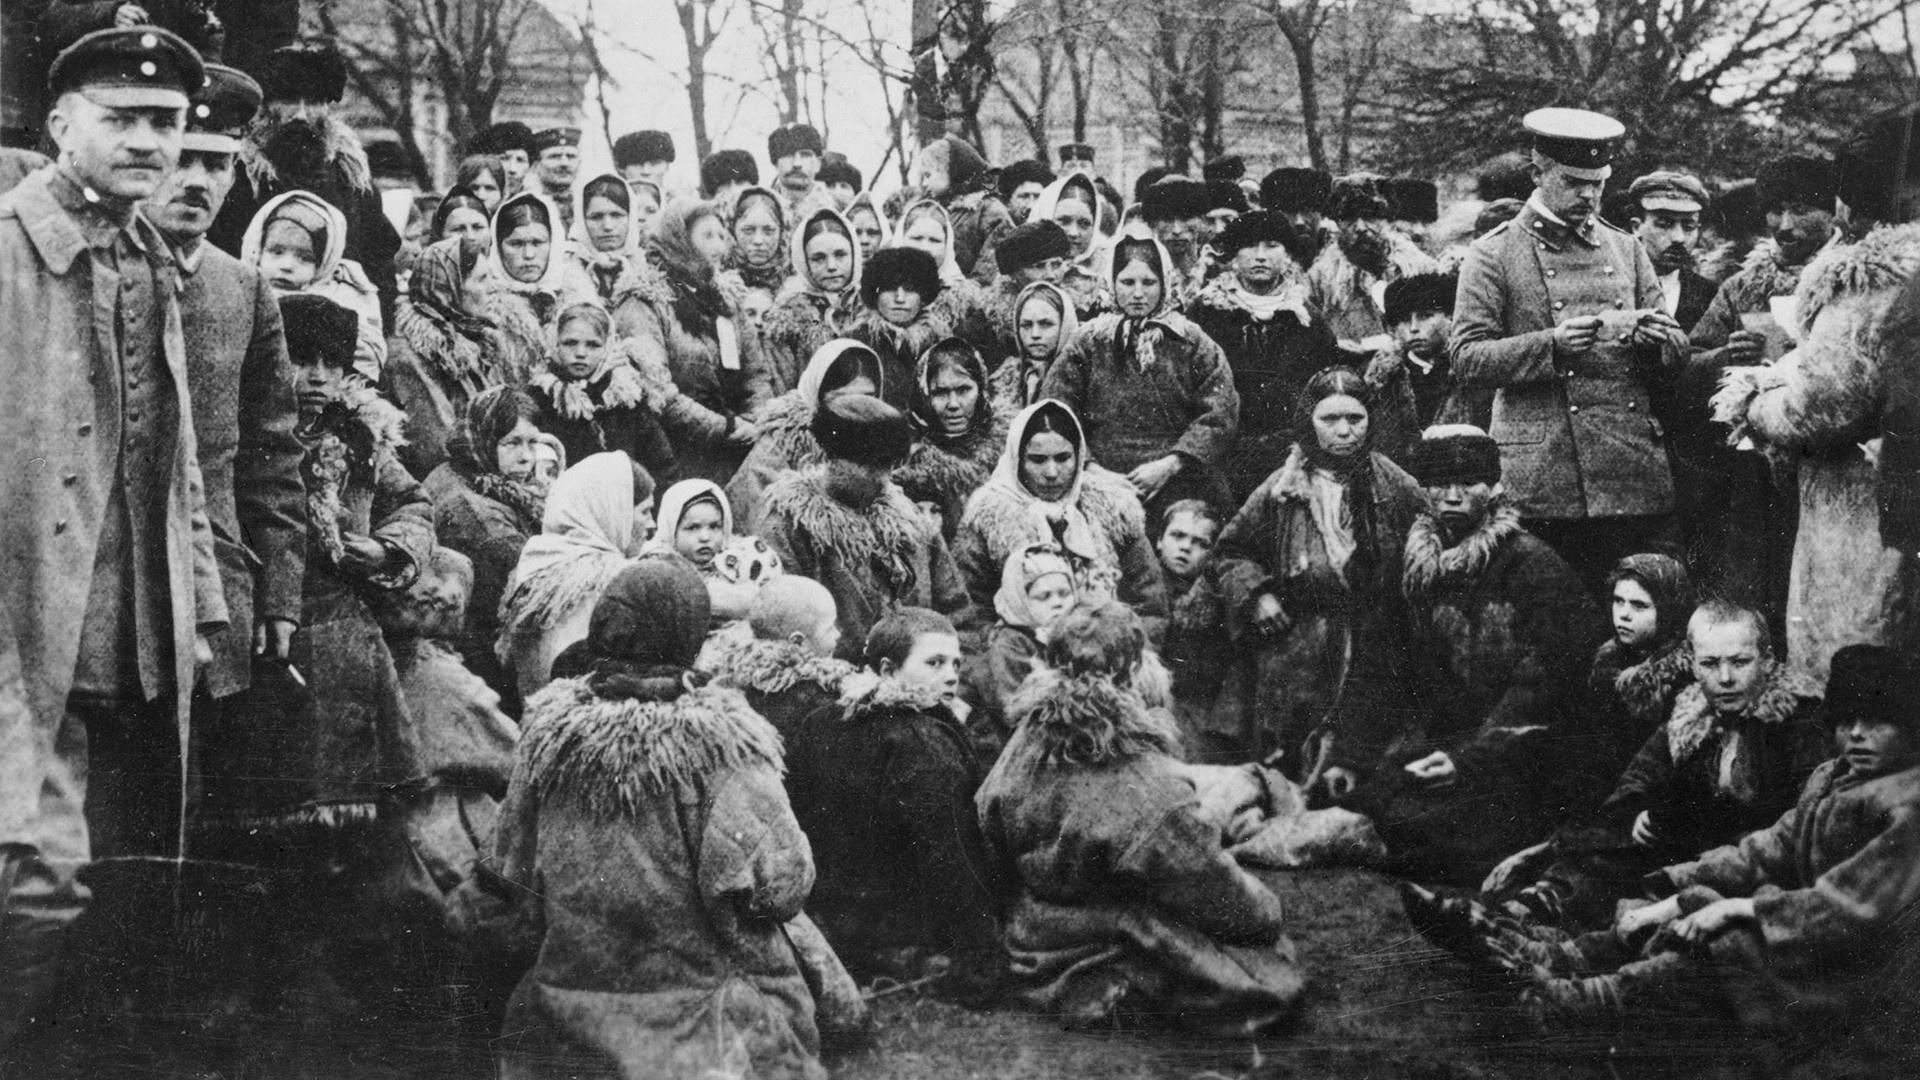 20世紀初頭は、ロシアのユダヤ人にとって厳しい時代だった。